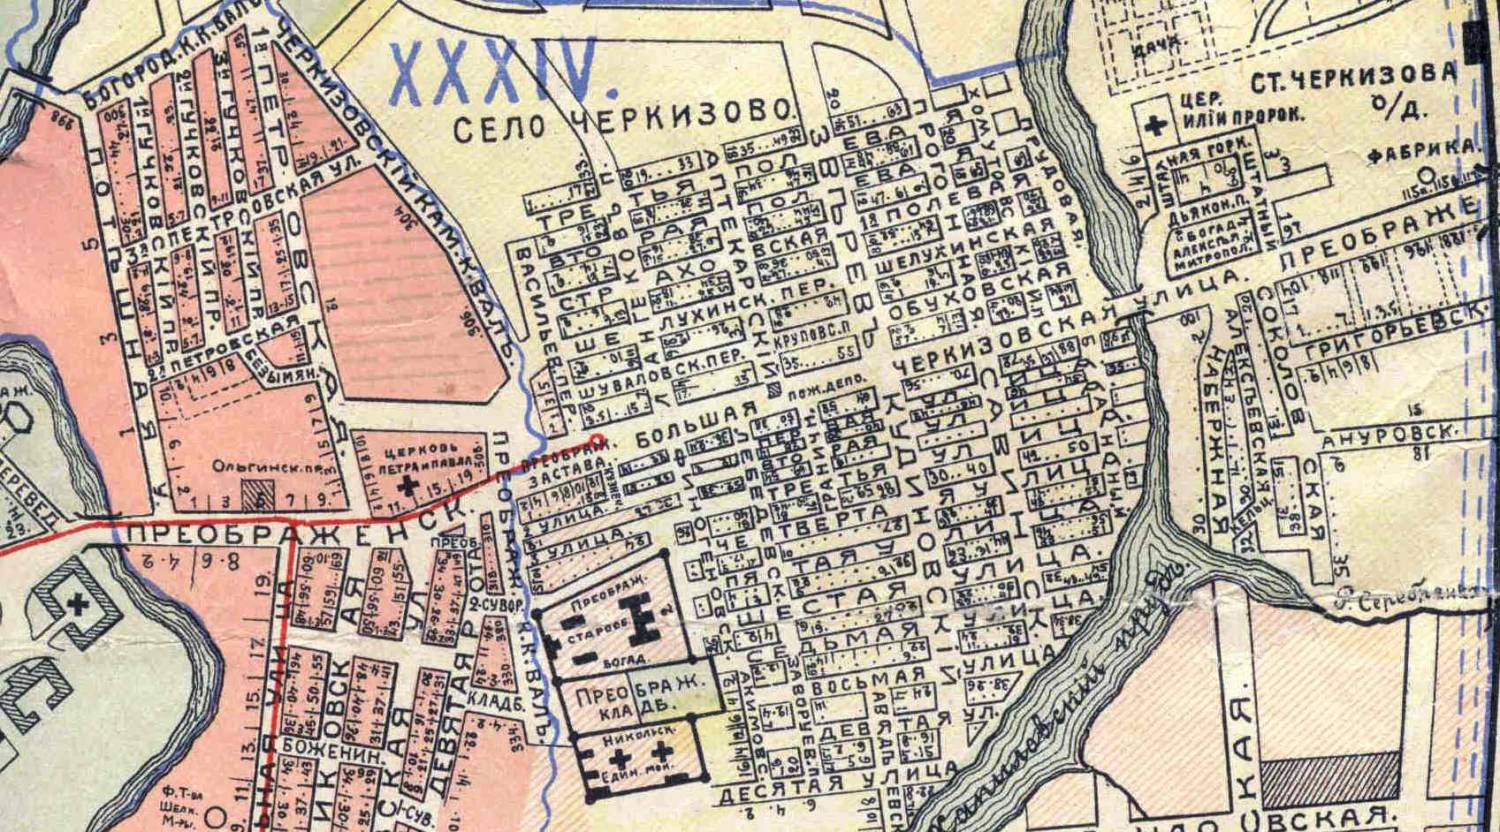 Где находится дом преображенского. Старая карта села Черкизово Москва.